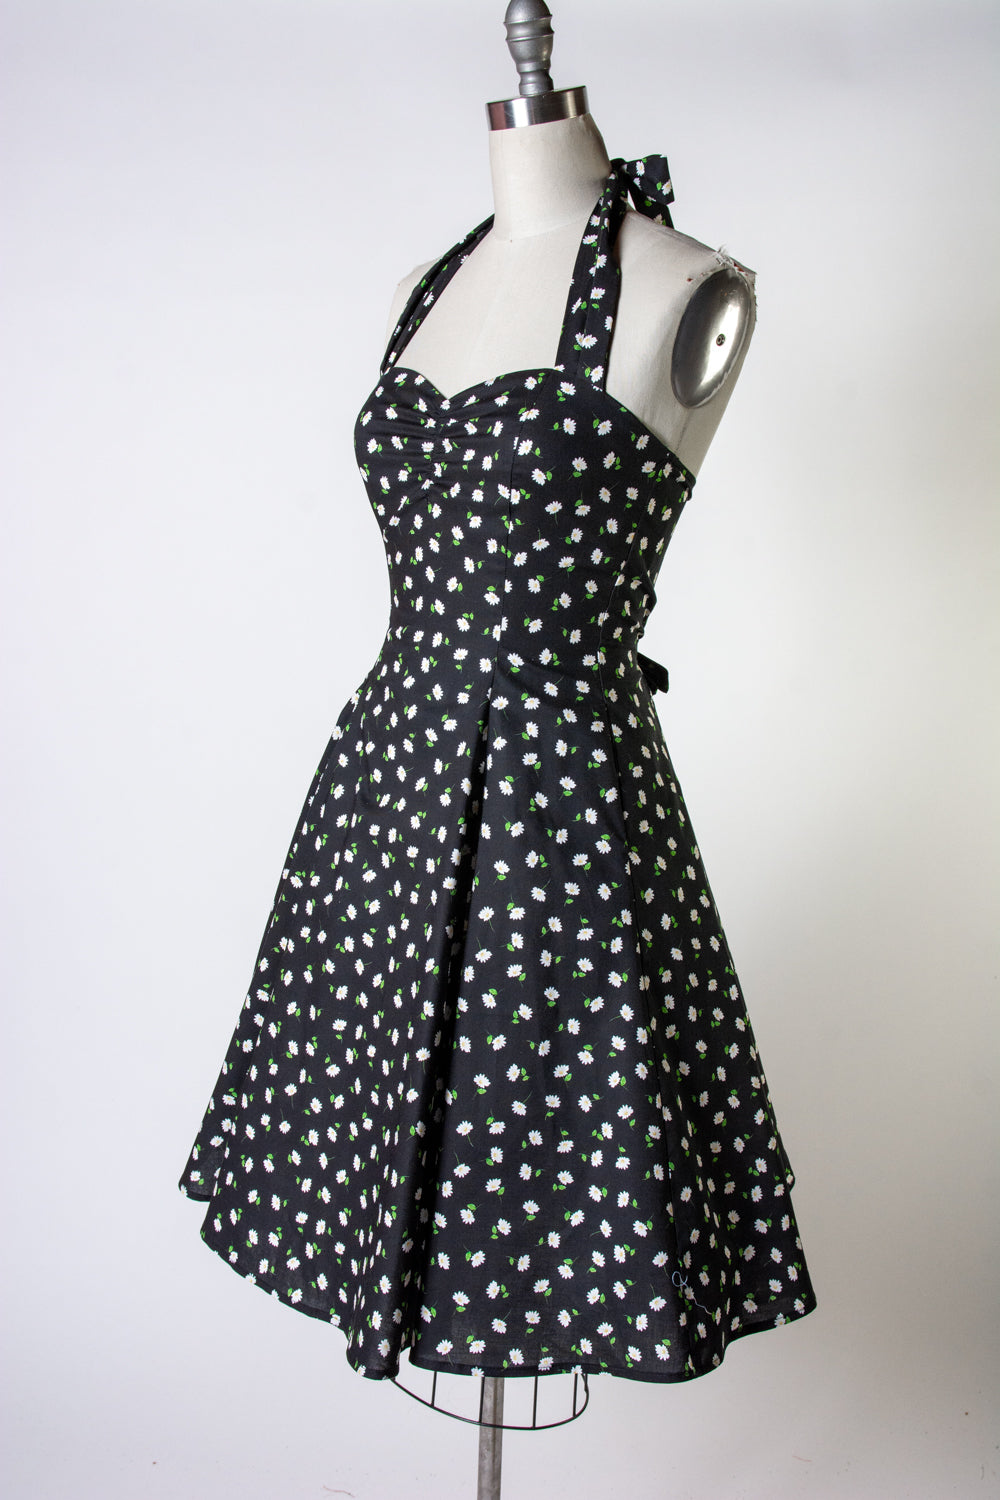 Sweetie Dress - Black Daisy *sale